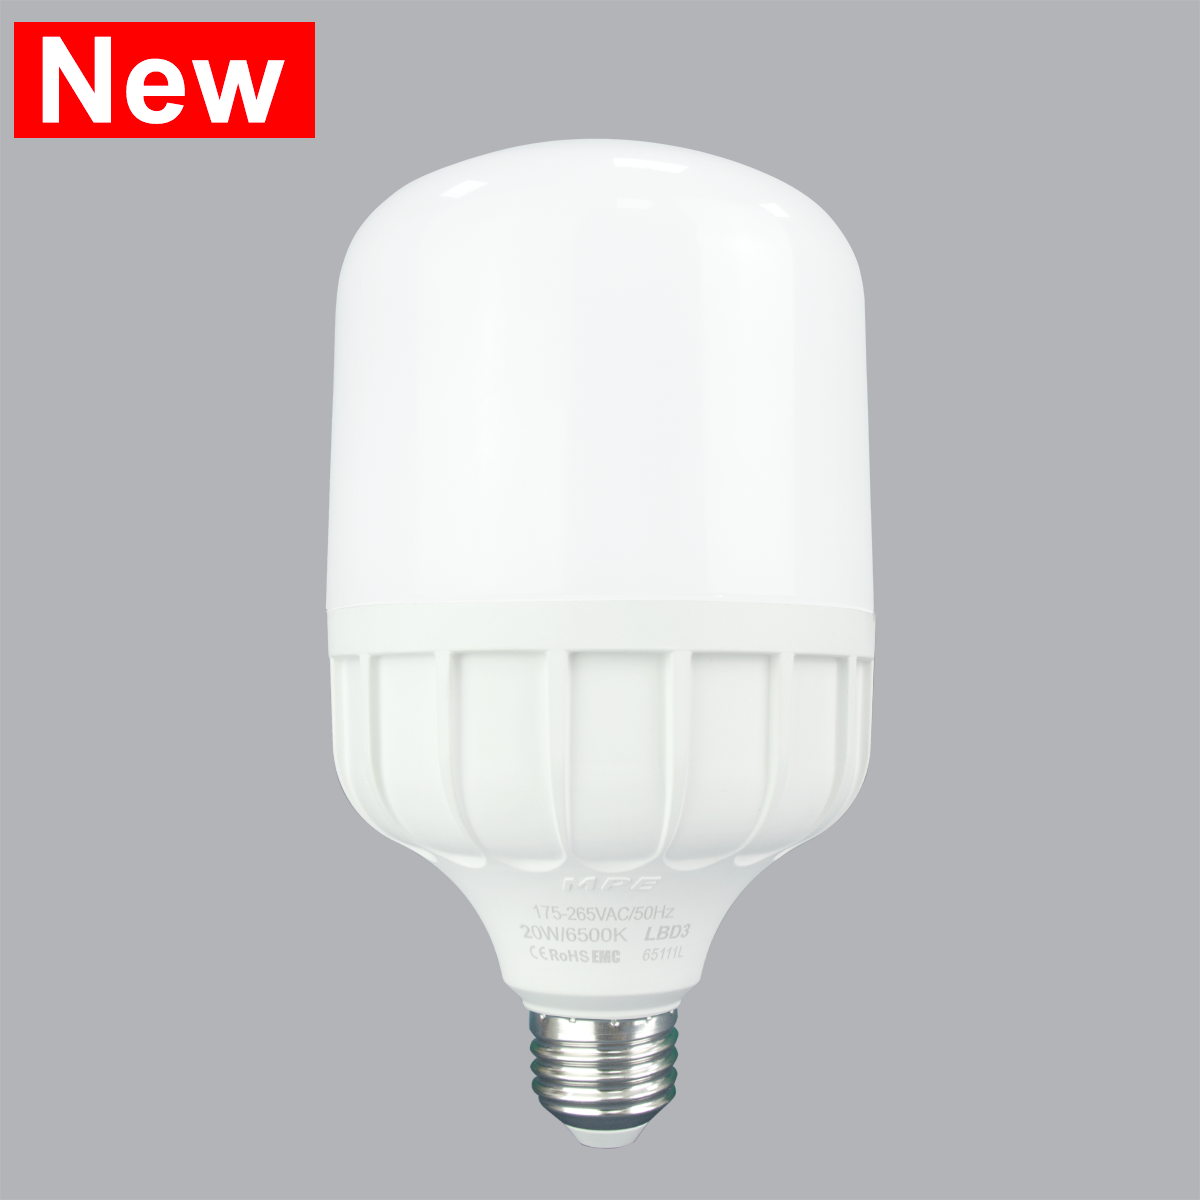 Đèn led Bulb chống ẩm 30W MPE, 100X186 mm - LBD3-30T ánh sáng trắng